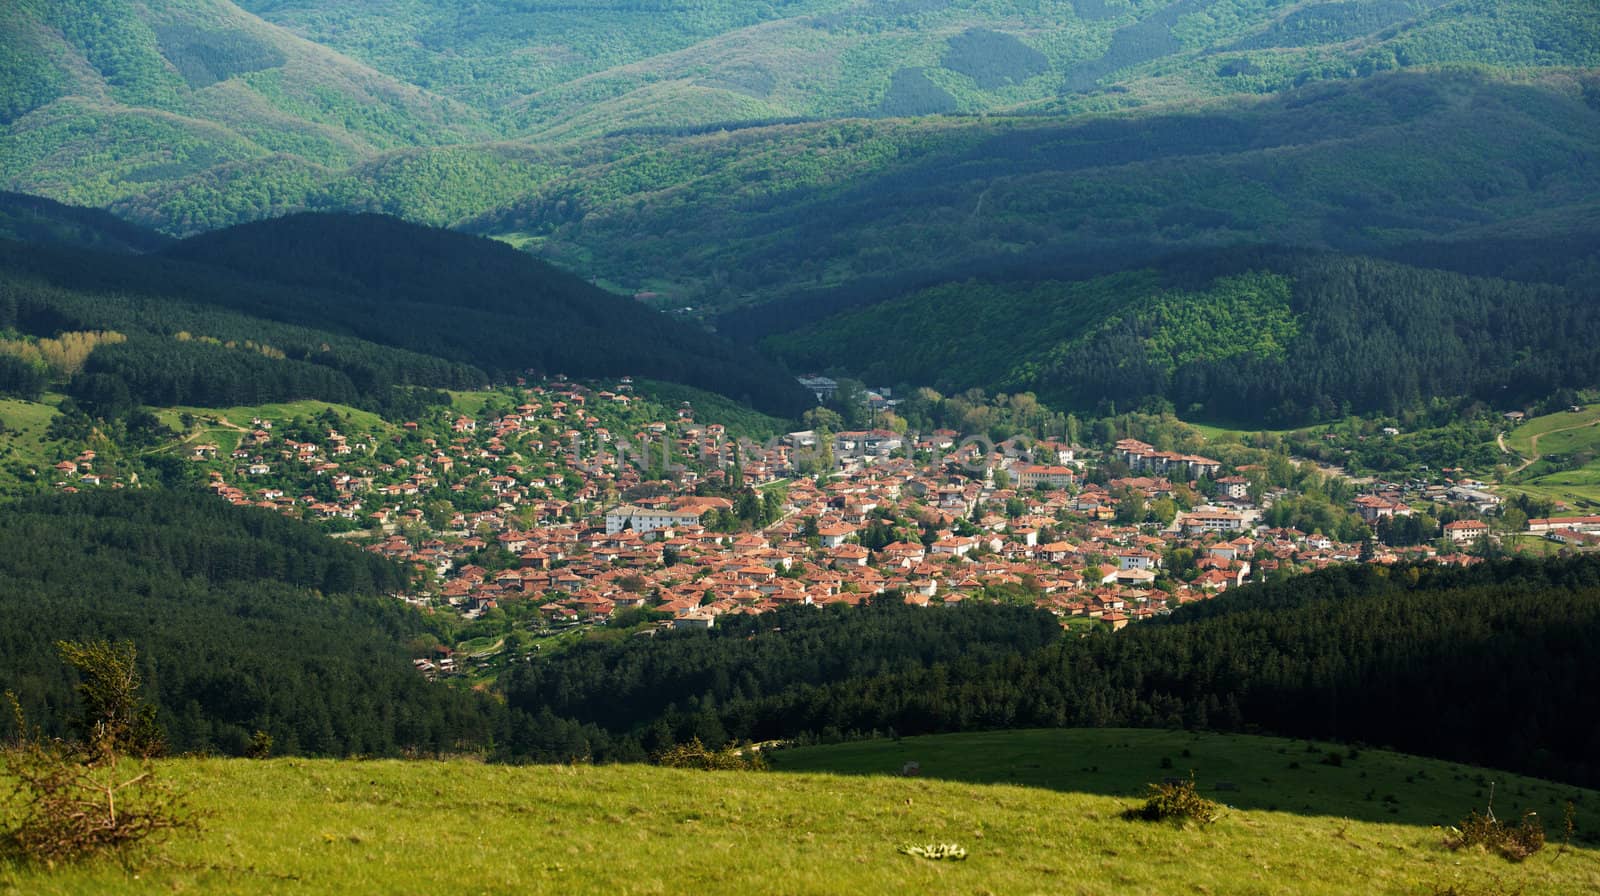 Kotel town, Bulgaria by ecobo